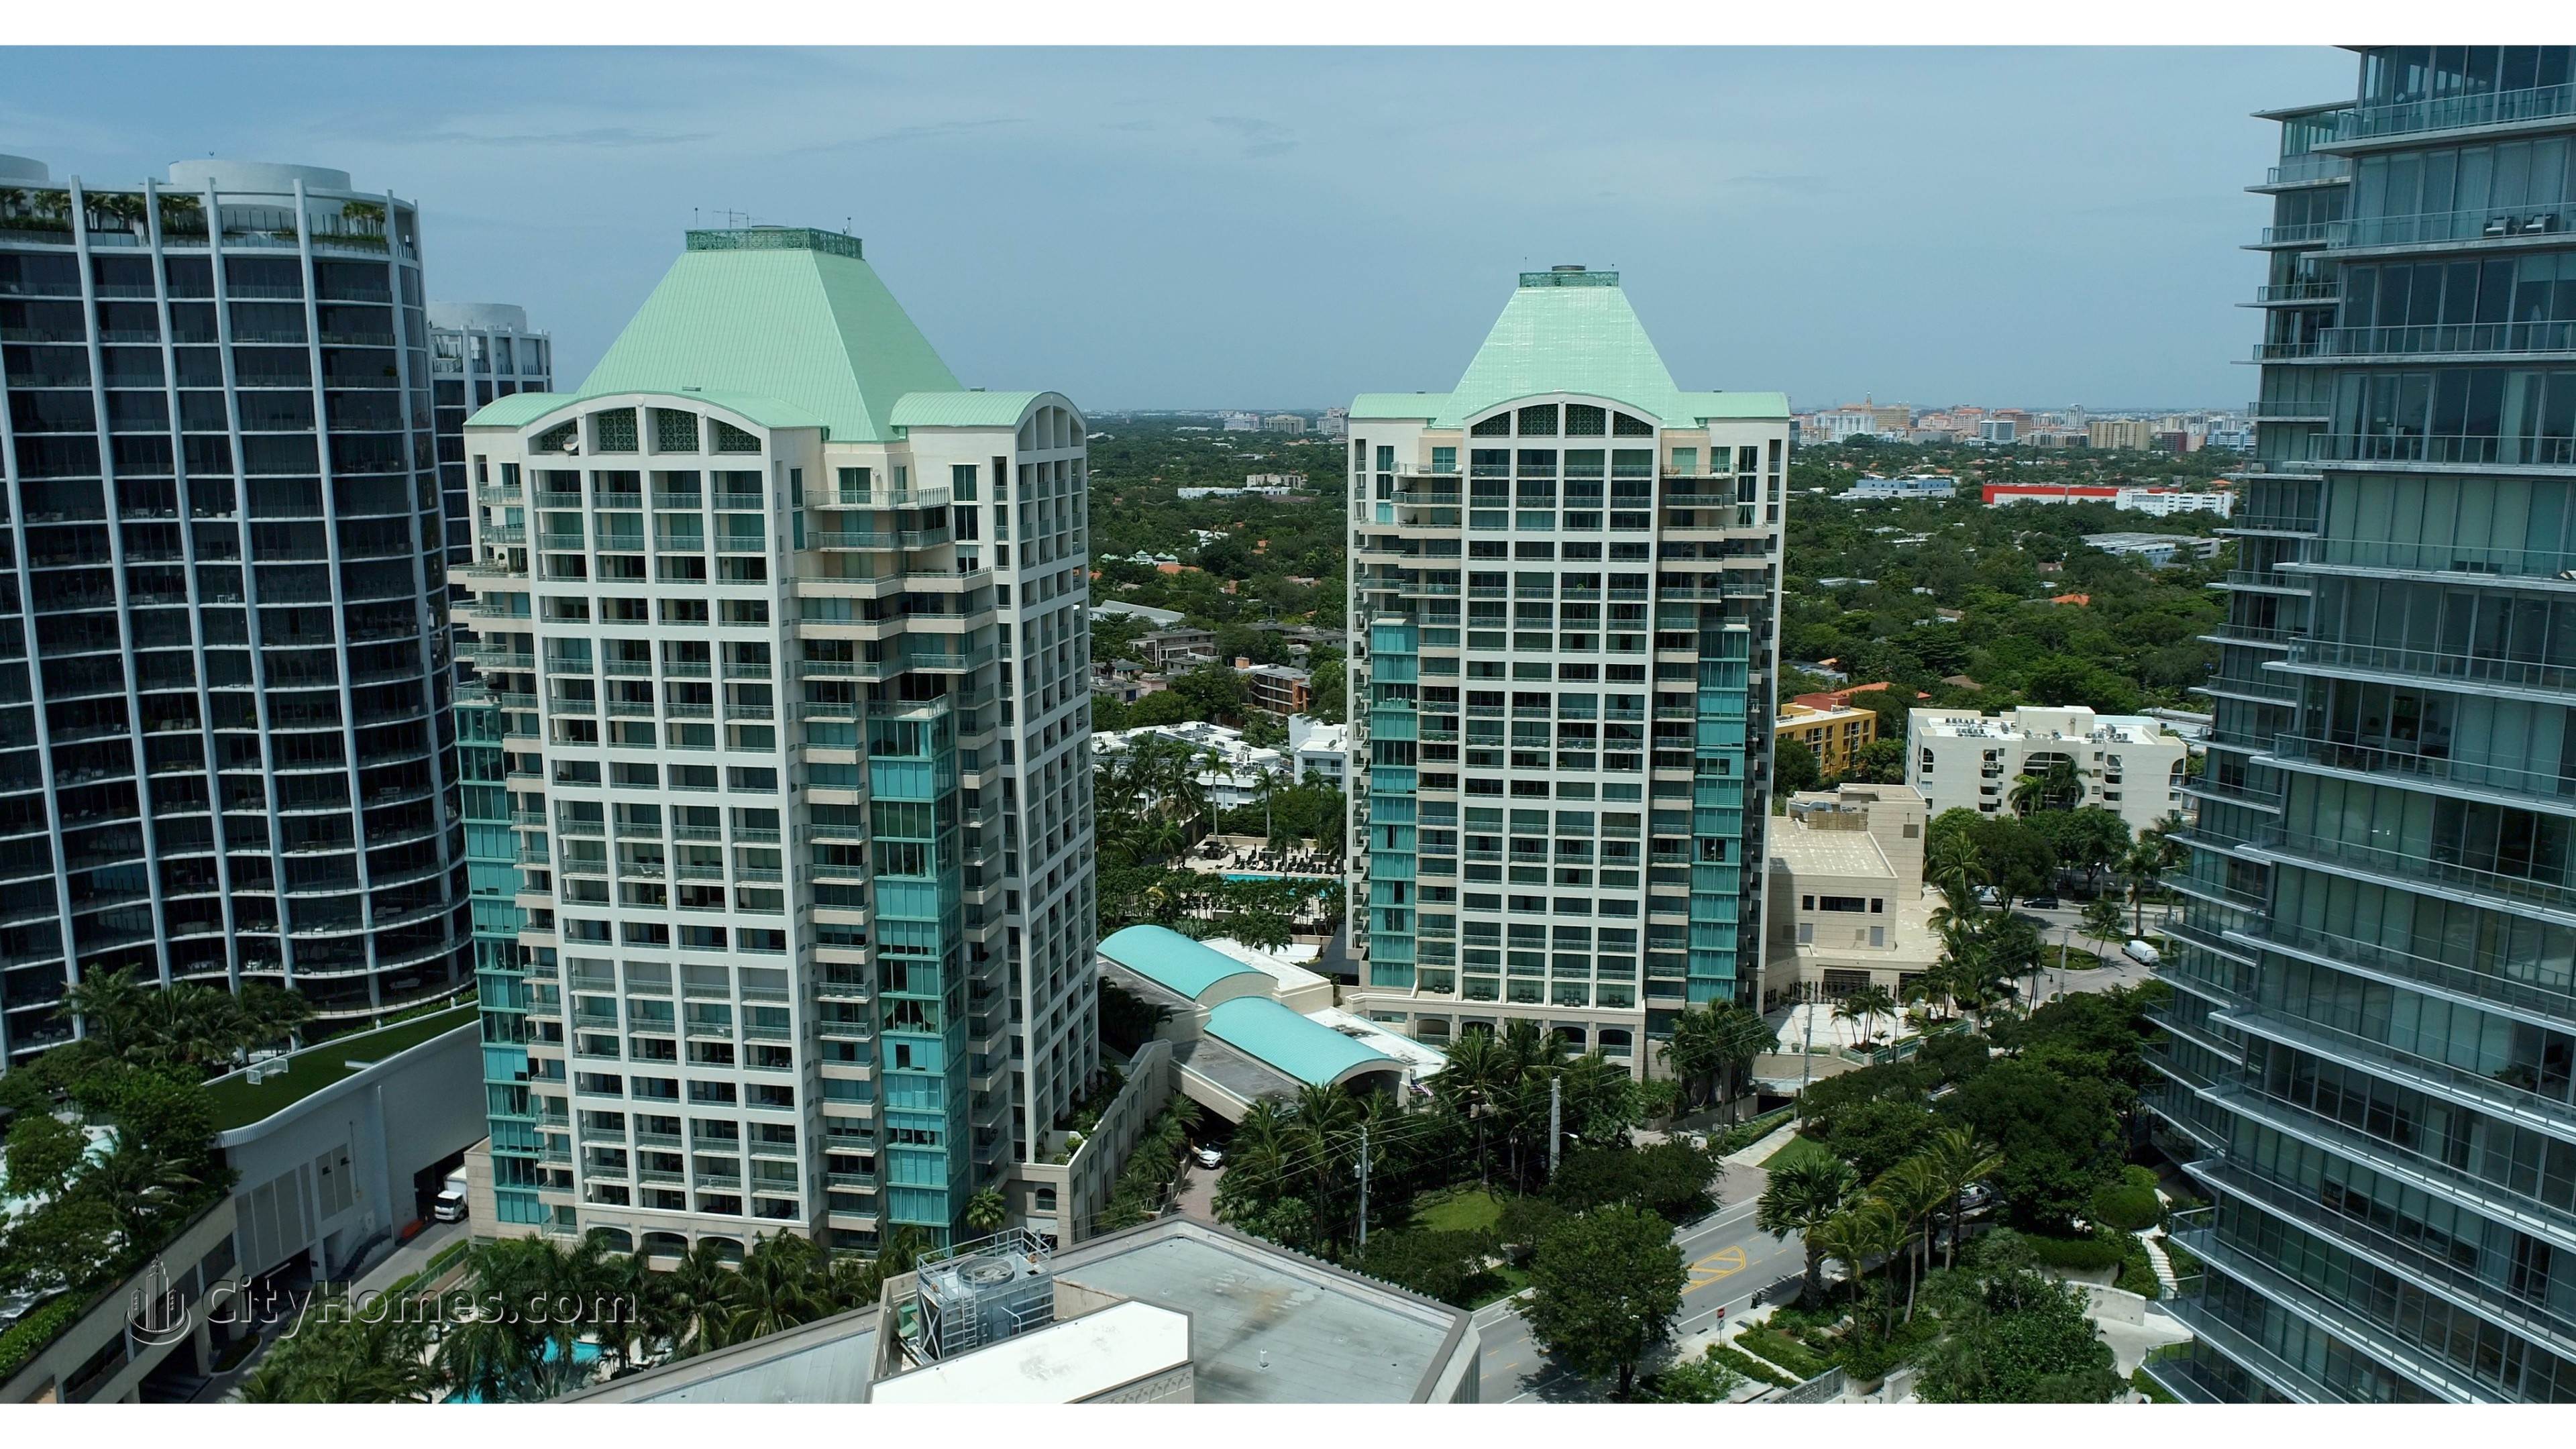 Ritz-Carlton Coconut Grove edificio a 3300 And 3350 SW 27th Avenue, Miami, FL 33133